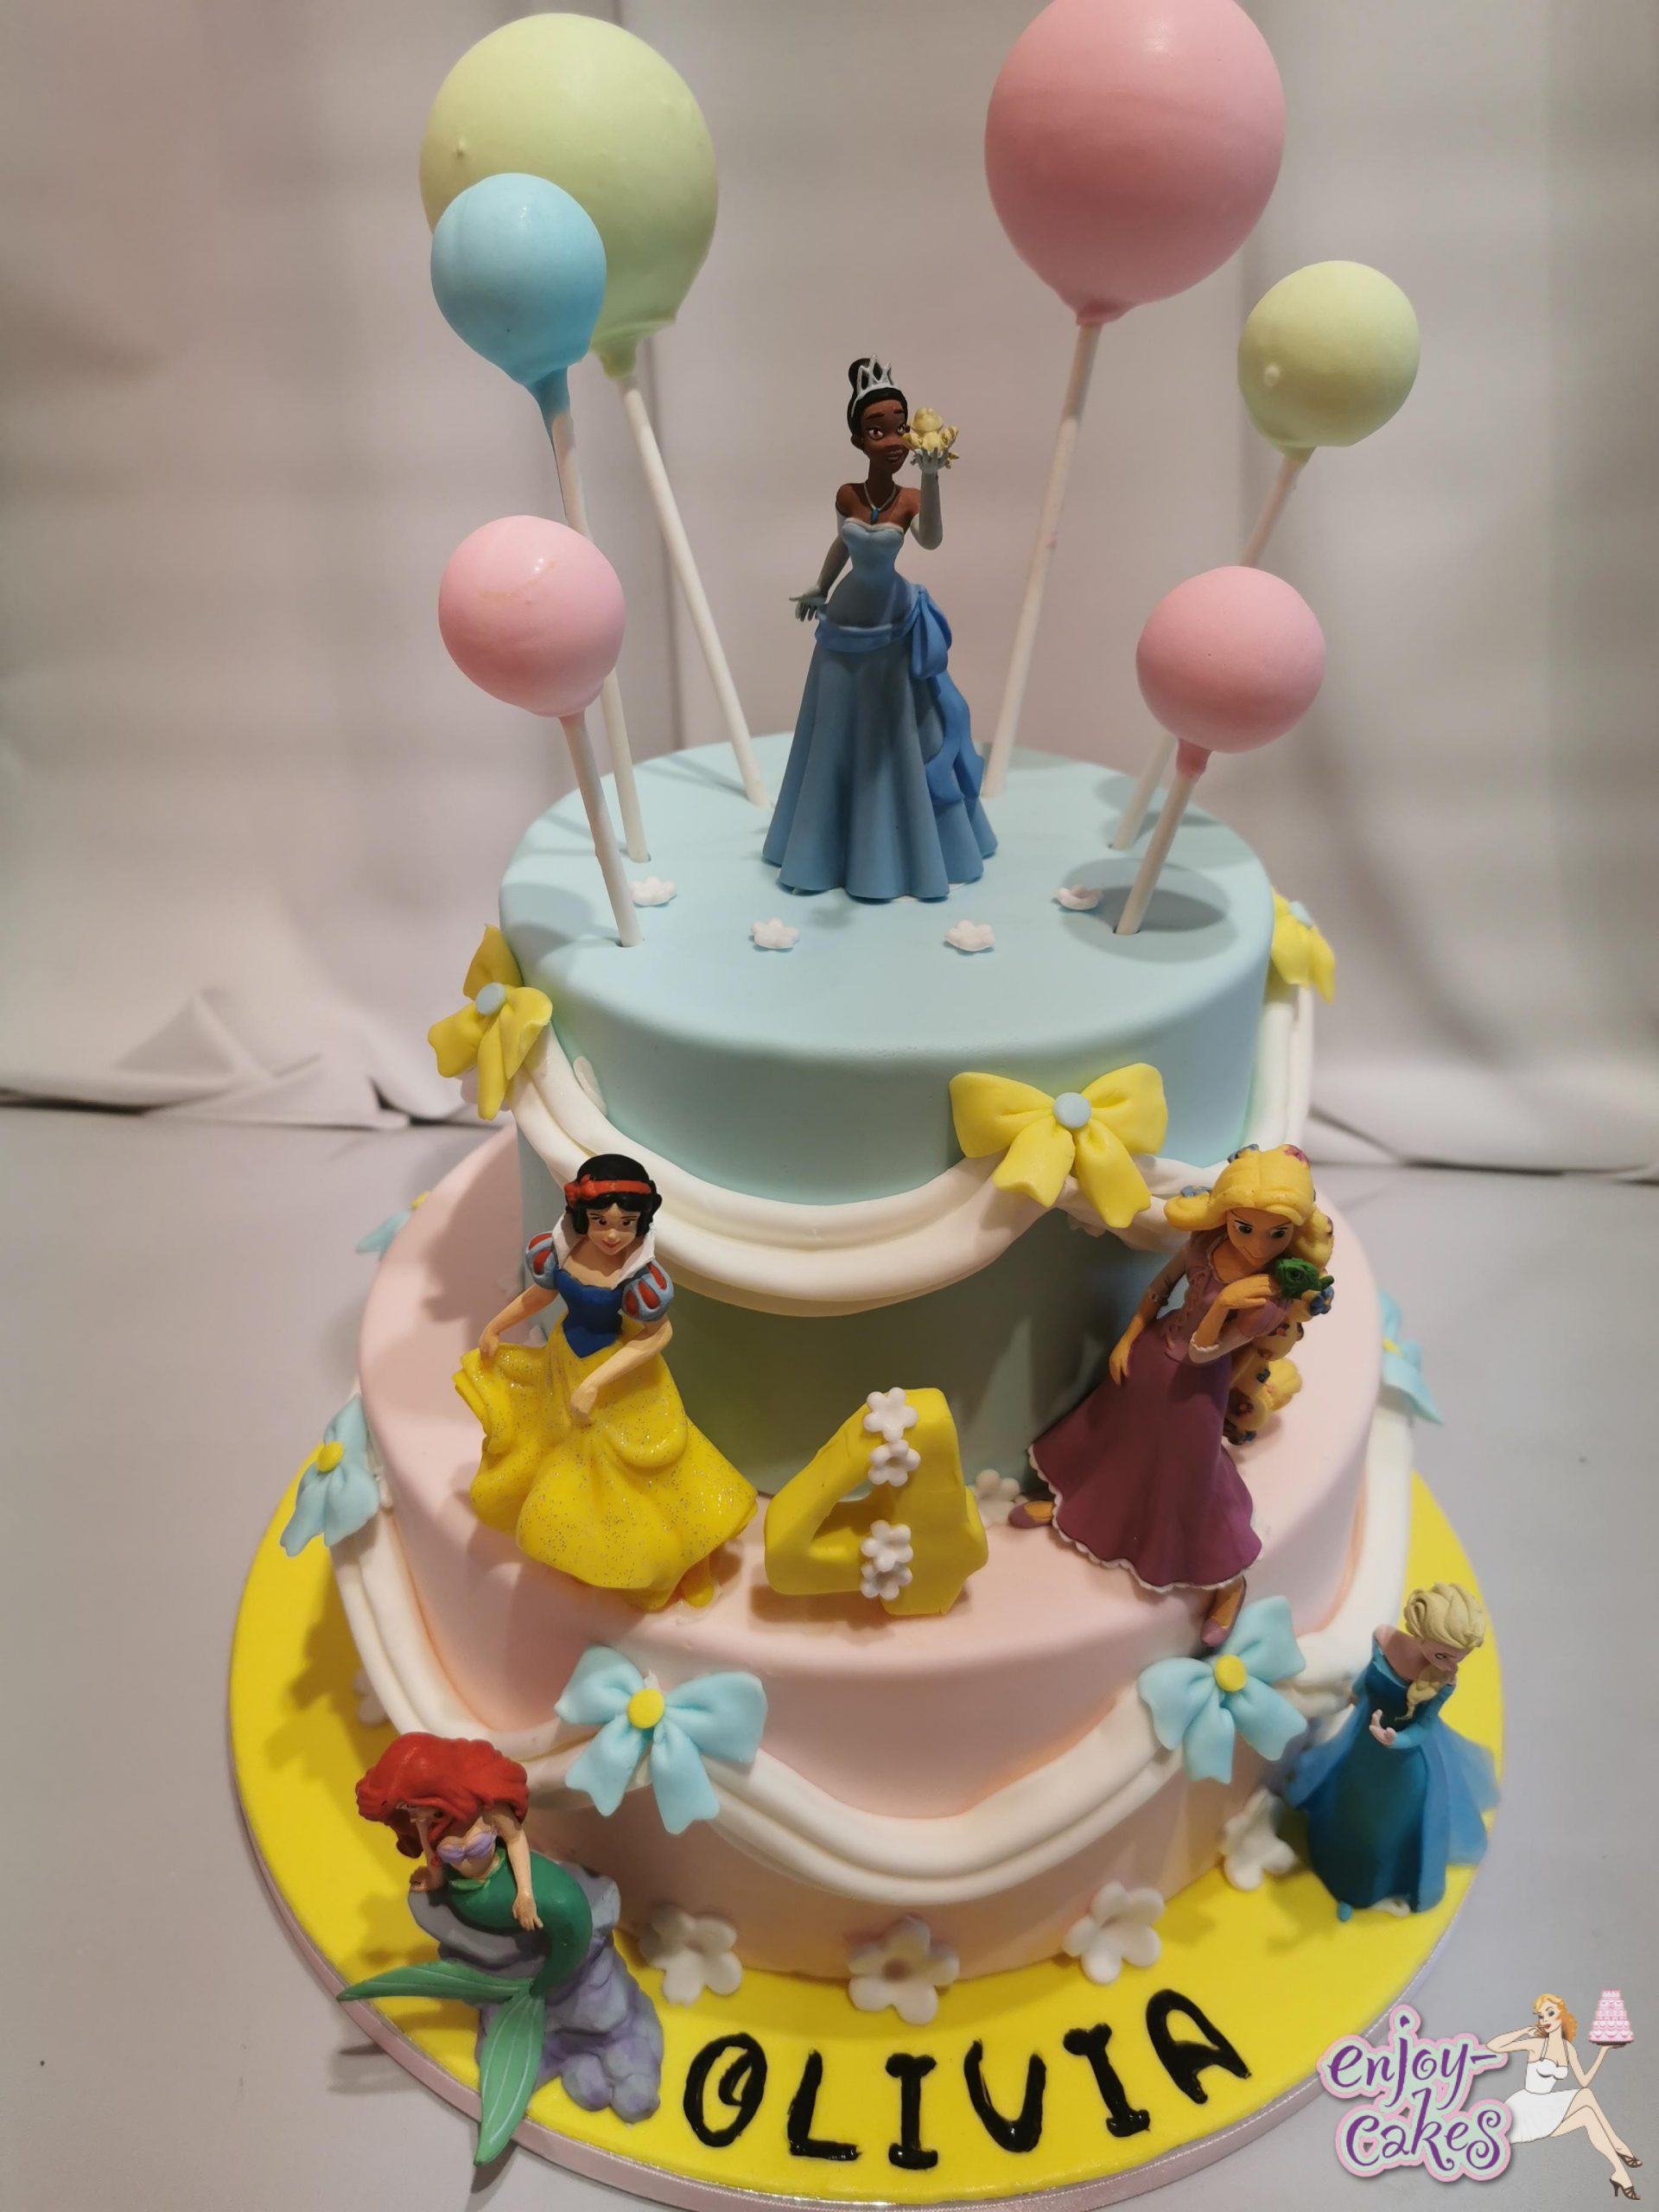 Oost Junior monteren Prinsessentaart met ballonnen - Enjoy-Cakes